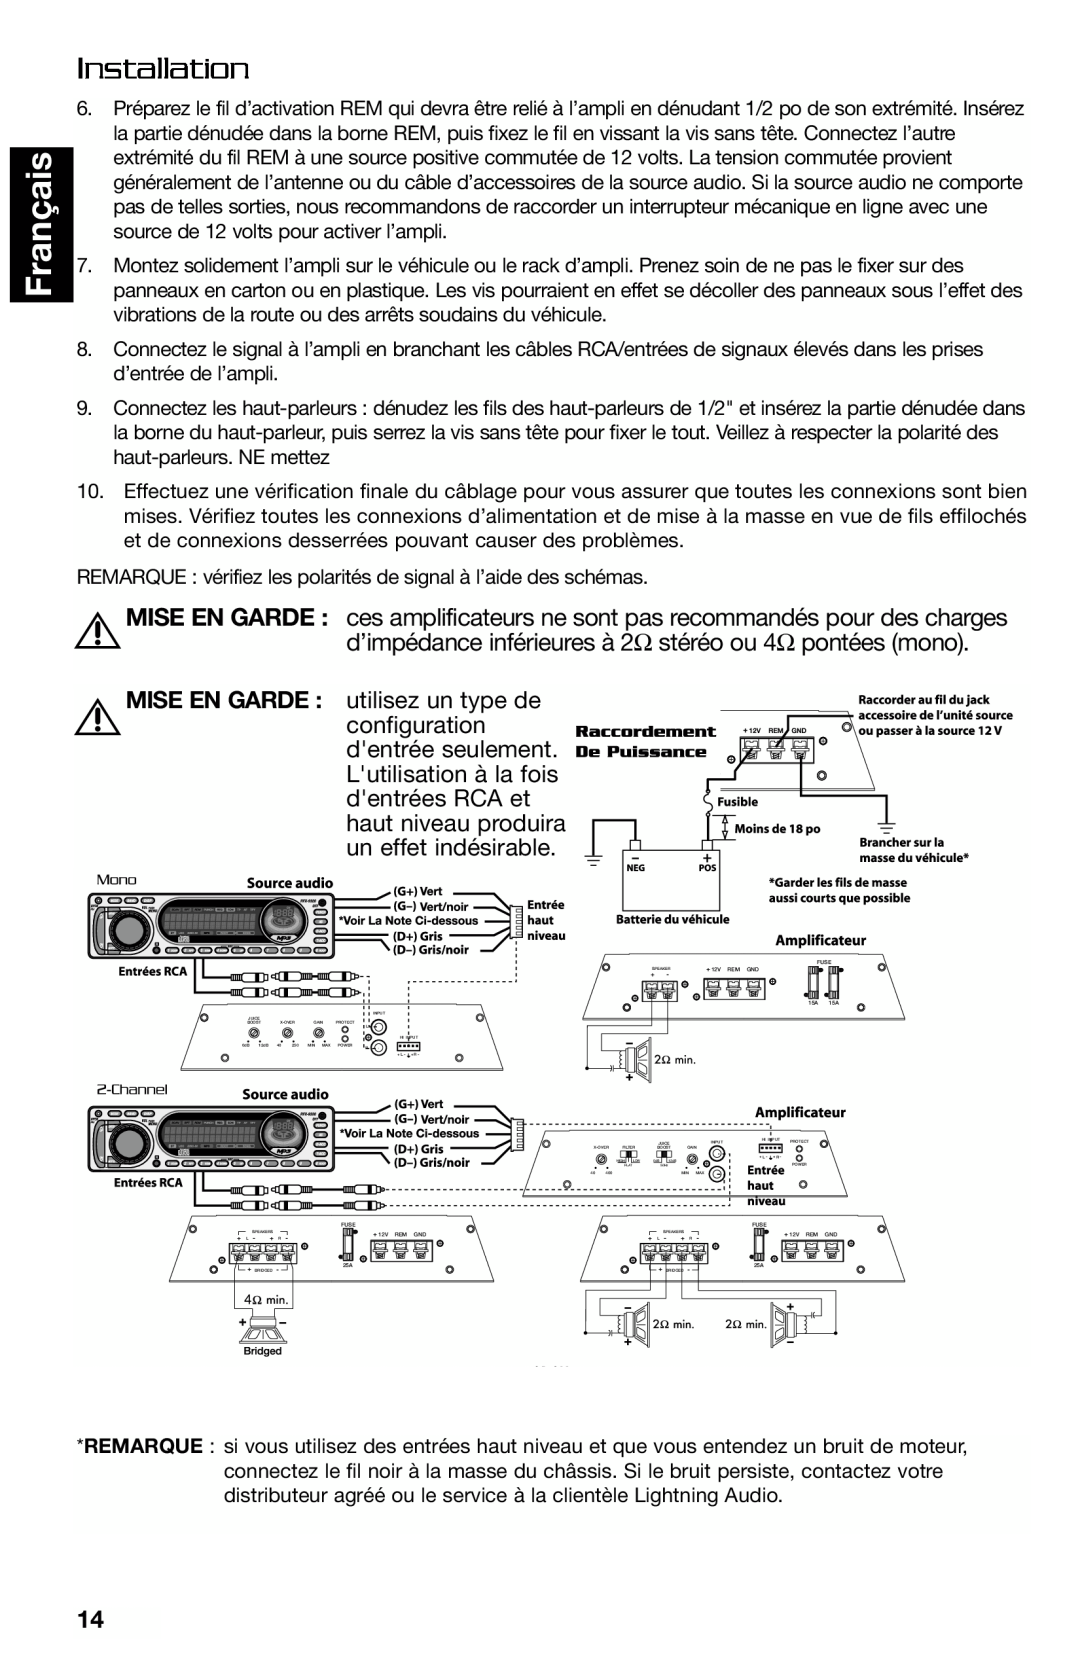 Lightning Audio FF250.1 manual Français, Installation, Mise En Garde, utilisez un type de, configuration, dentrée seulement 